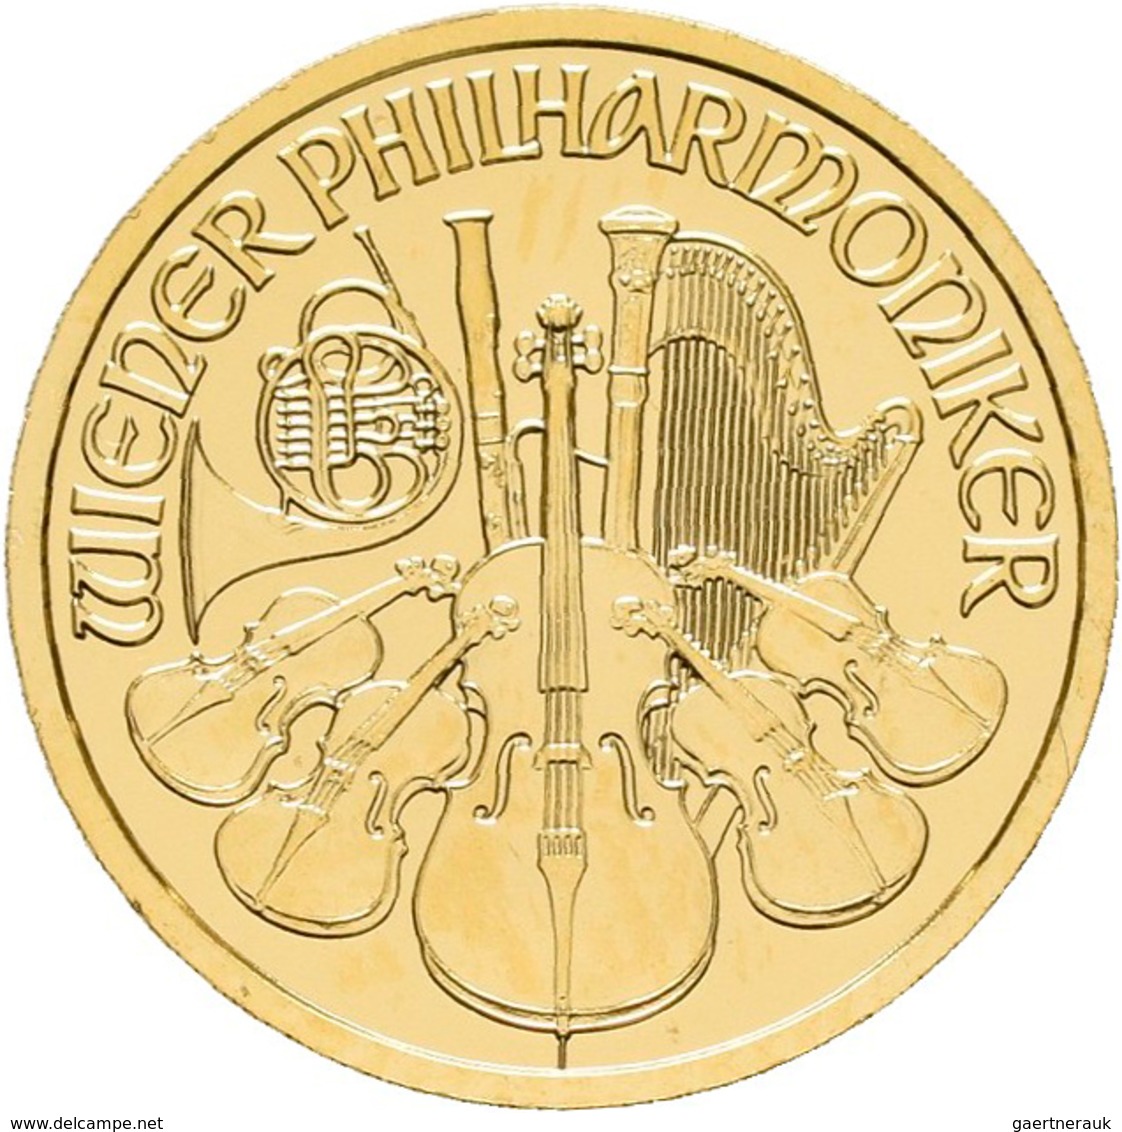 Österreich - Anlagegold: 10 Euro 2005, Wiener Philharmoniker, Gold 999,9, 1/10 Unze, Stempelglanz. - Oostenrijk